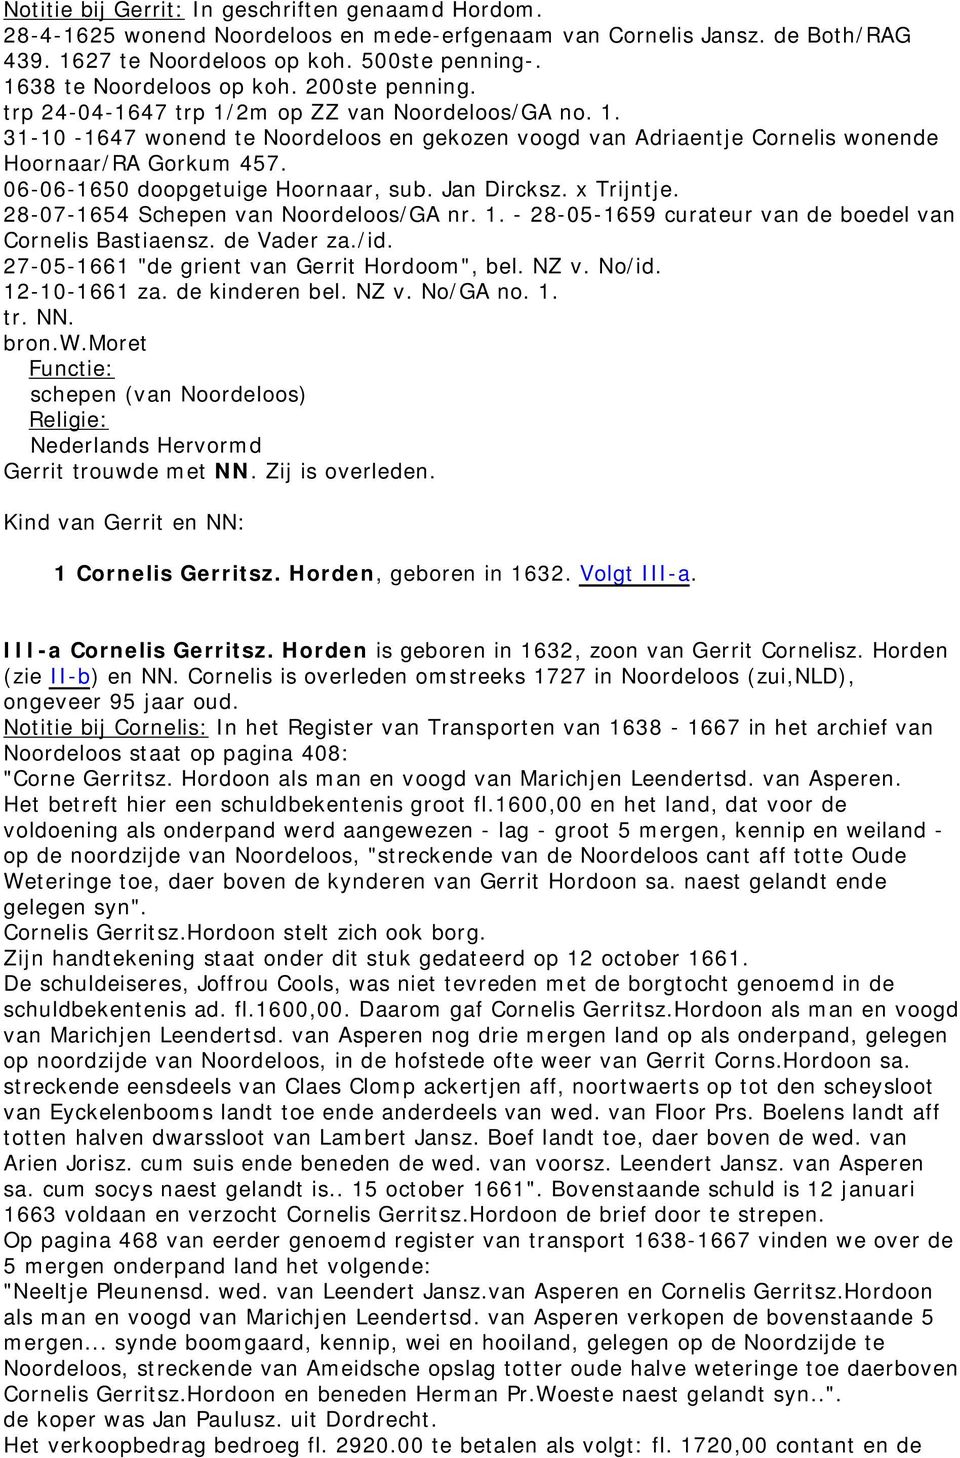 06-06-1650 doopgetuige Hoornaar, sub. Jan Dircksz. x Trijntje. 28-07-1654 Schepen van Noordeloos/GA nr. 1. - 28-05-1659 curateur van de boedel van Cornelis Bastiaensz. de Vader za./id.